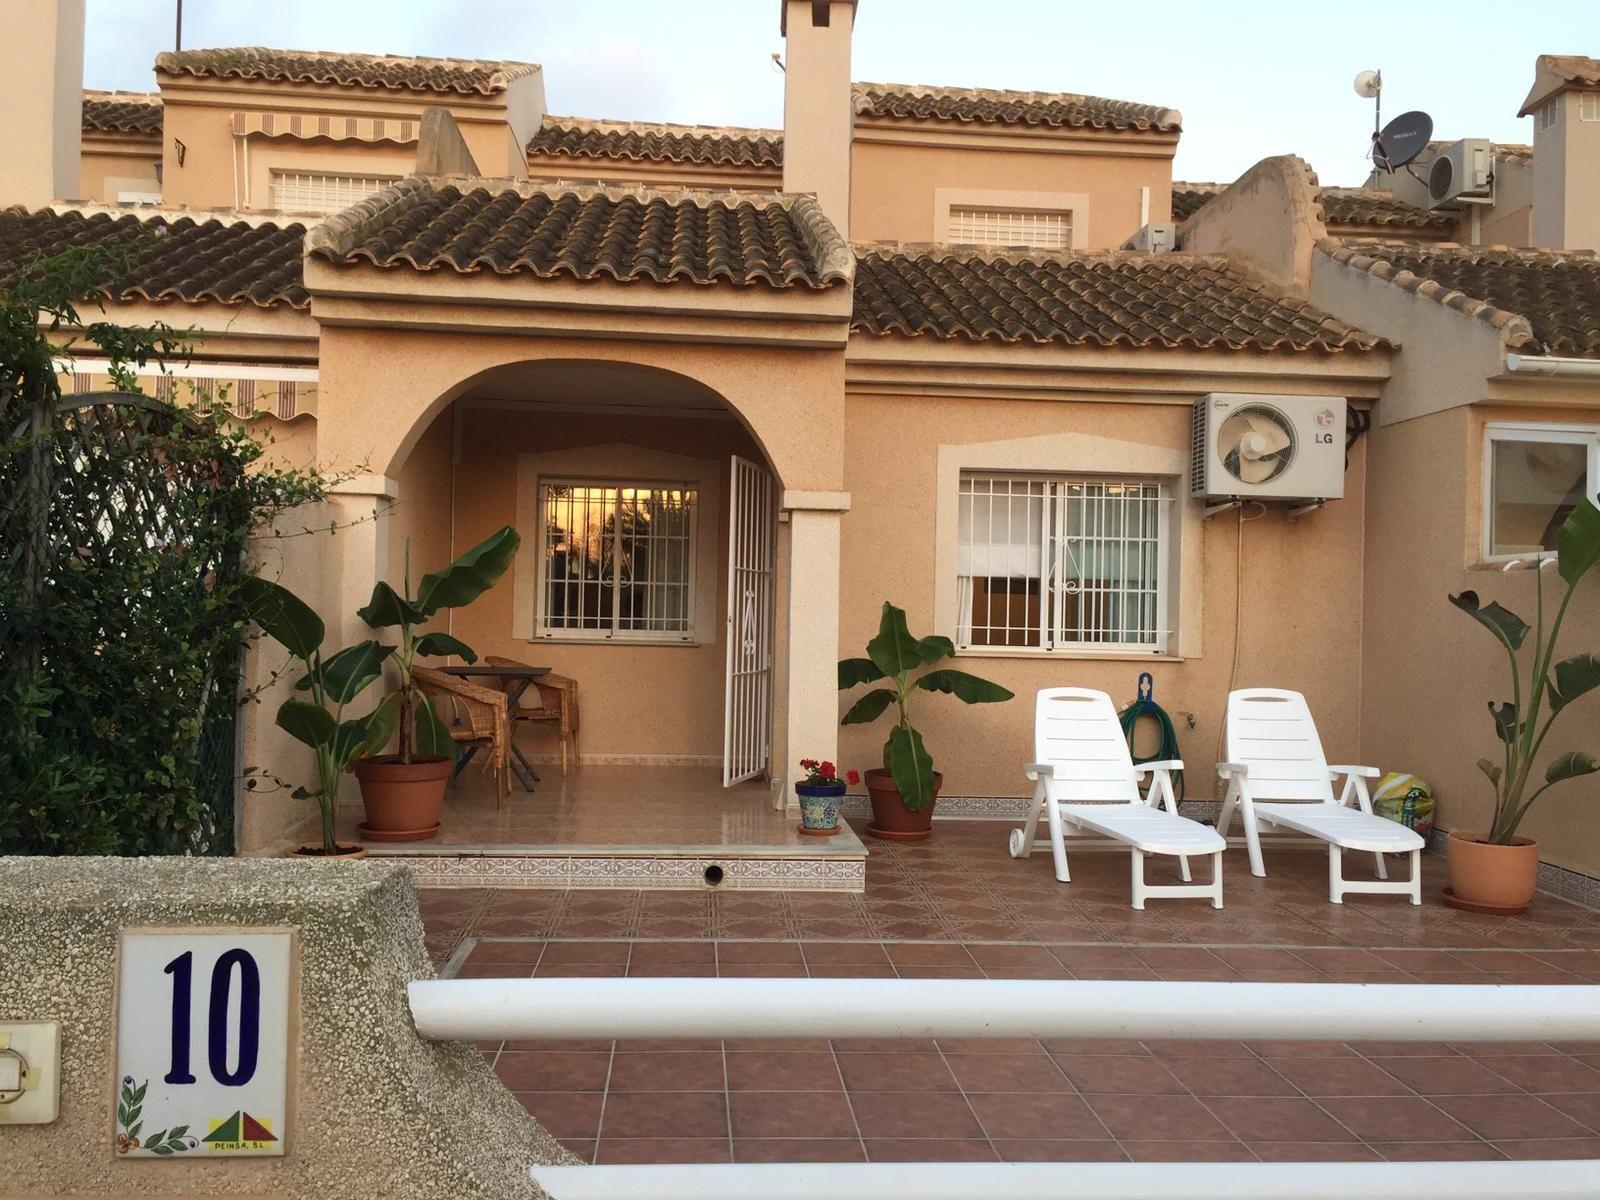 Ferienhaus in Cartagena mit Garten, Gemeinschafts  Ferienhaus in Spanien